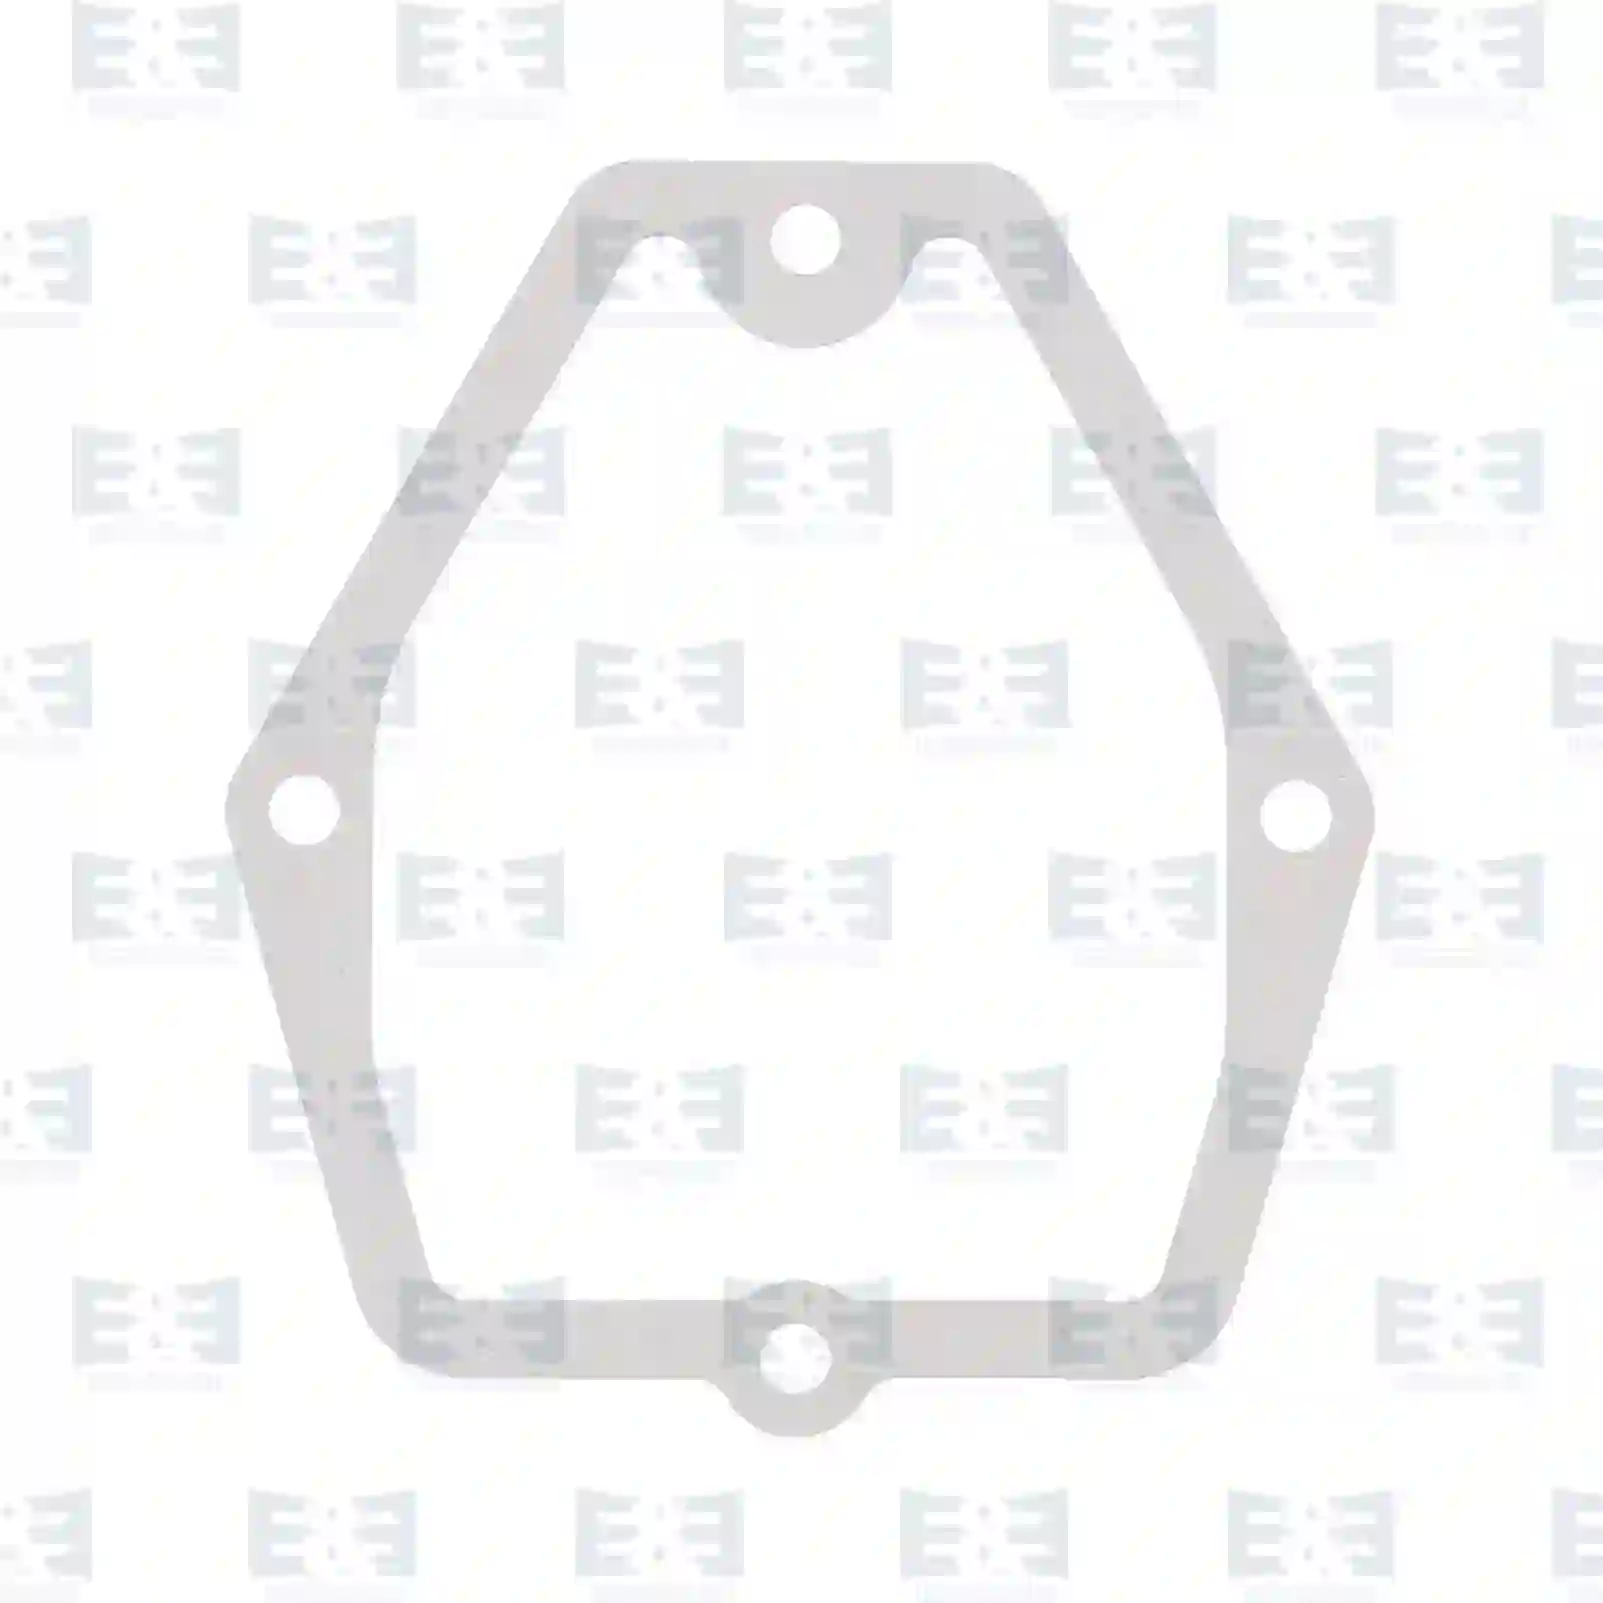  Valve cover gasket || E&E Truck Spare Parts | Truck Spare Parts, Auotomotive Spare Parts